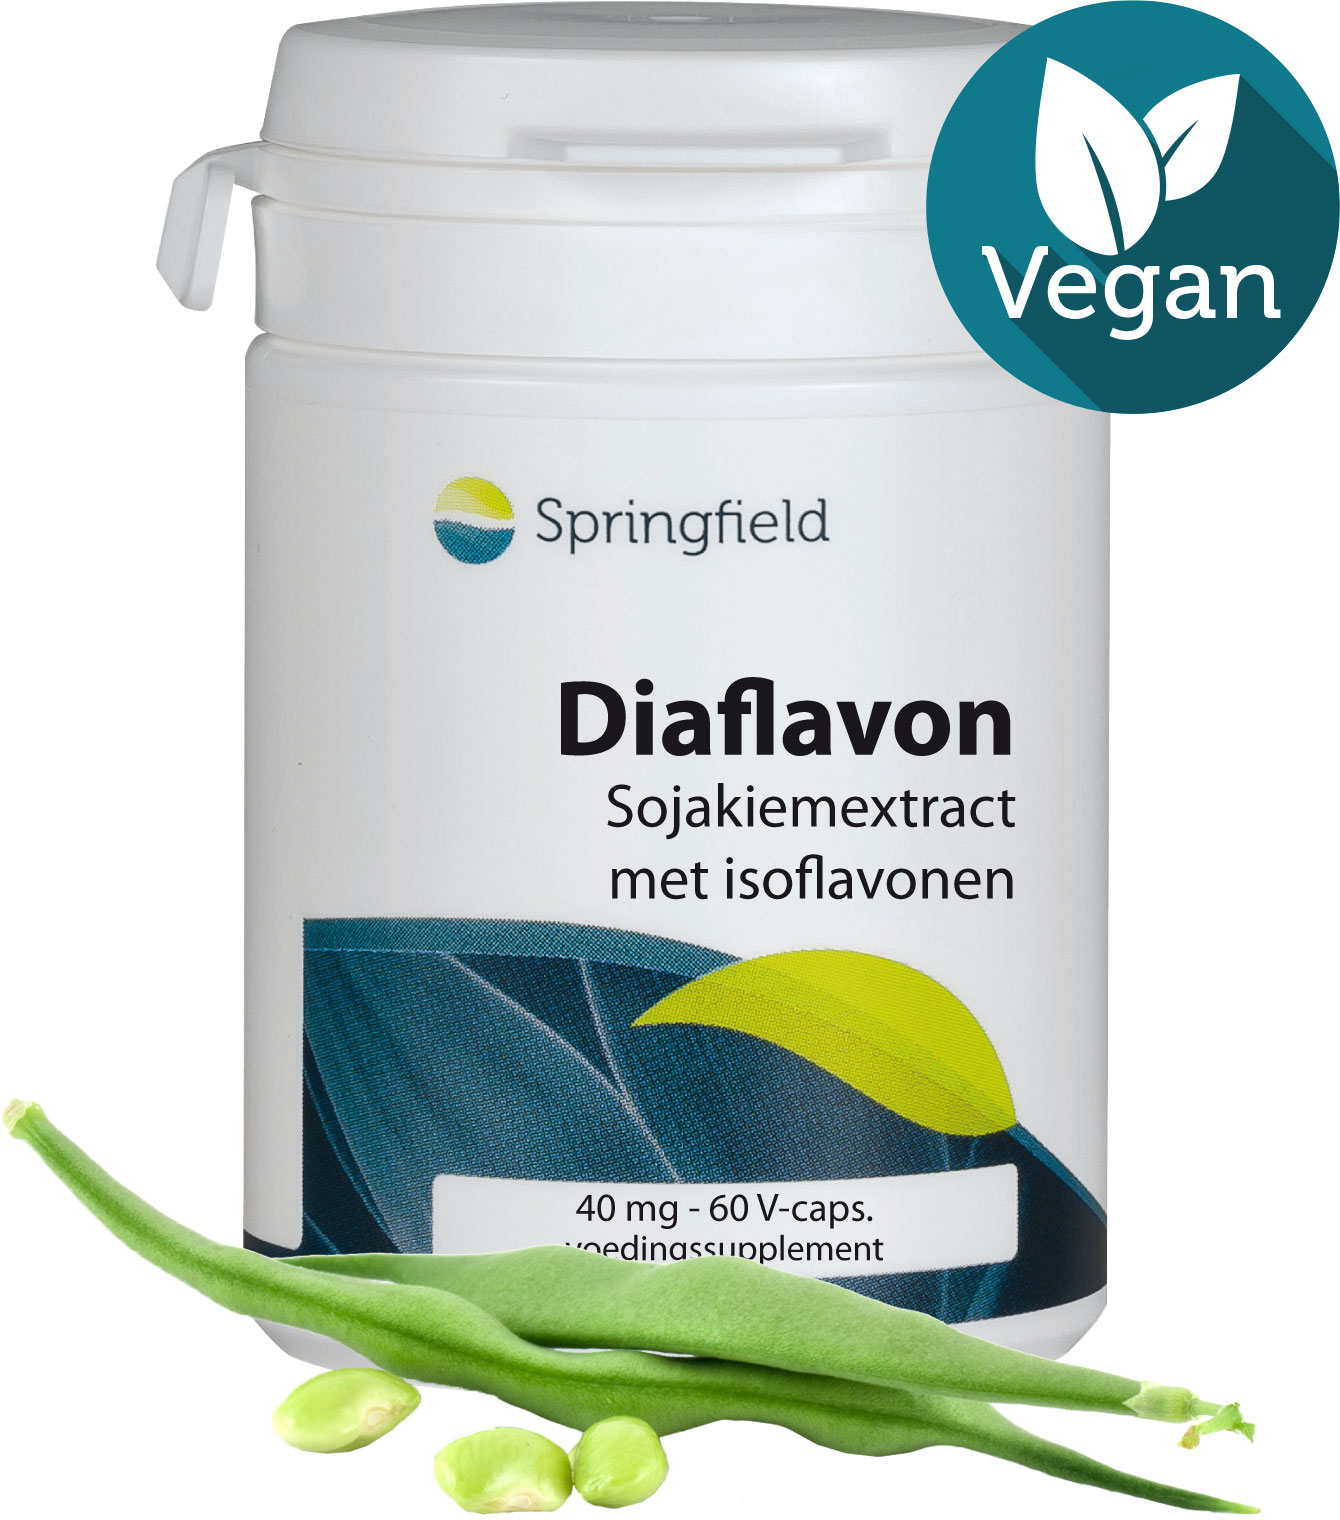 Diaflavon-soja-isoflavonen-voedingssuplement-vegan